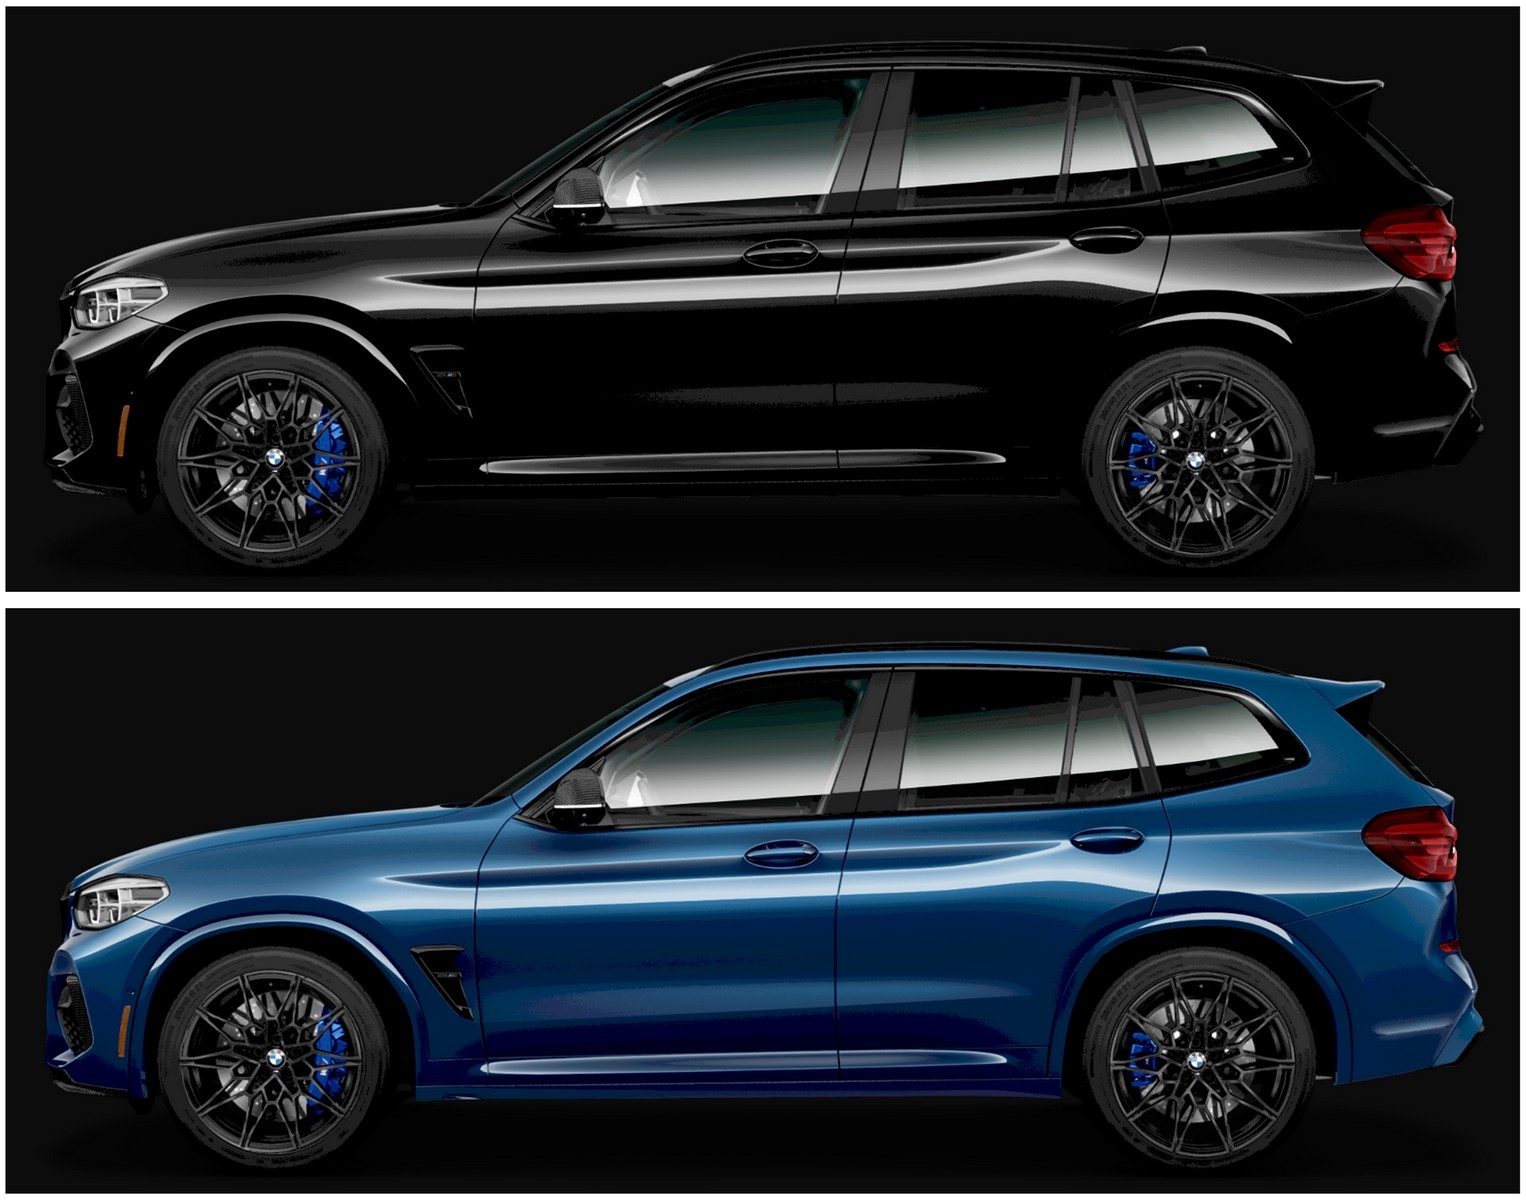 New OEM wheel option? - XBimmers | BMW X3 Forum